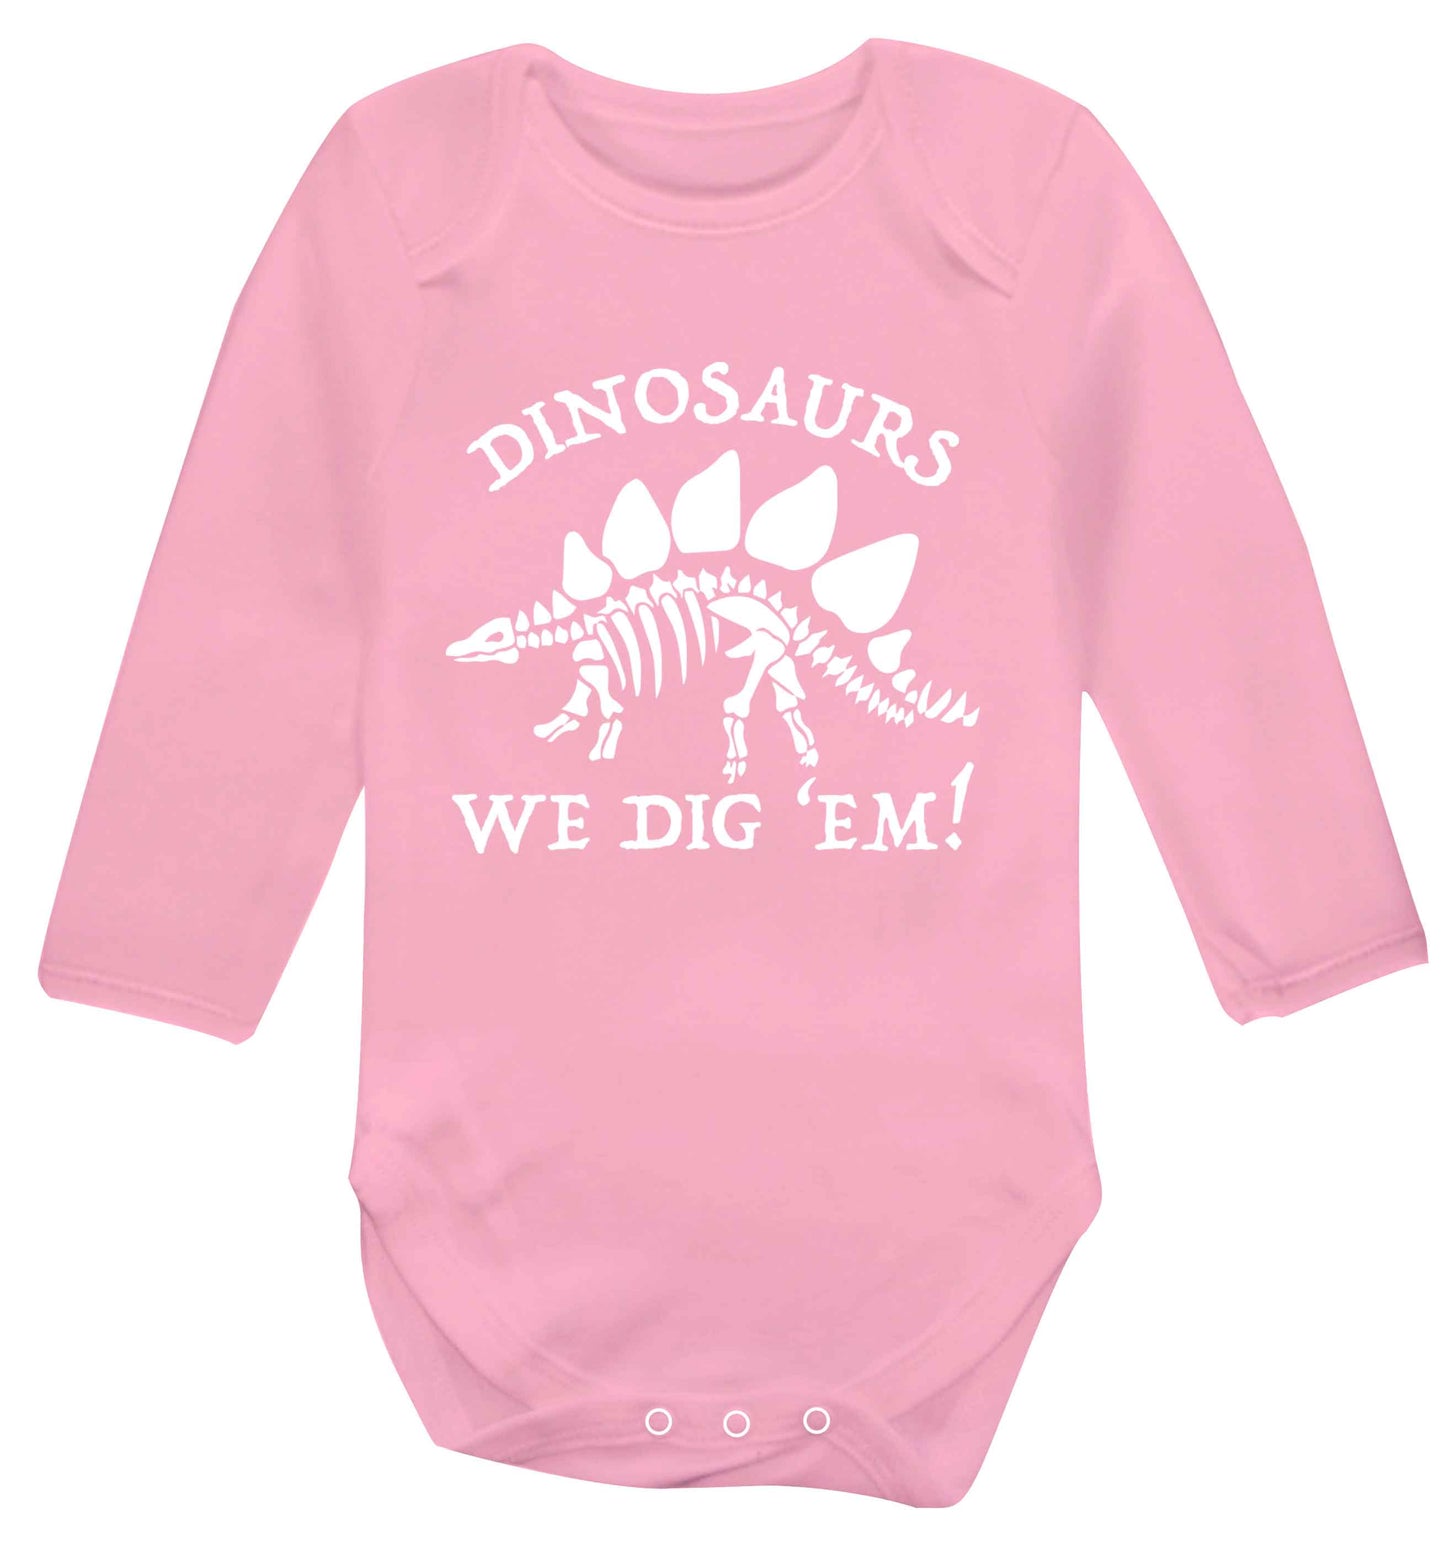 Dinosaurs we dig 'em! Baby Vest long sleeved pale pink 6-12 months